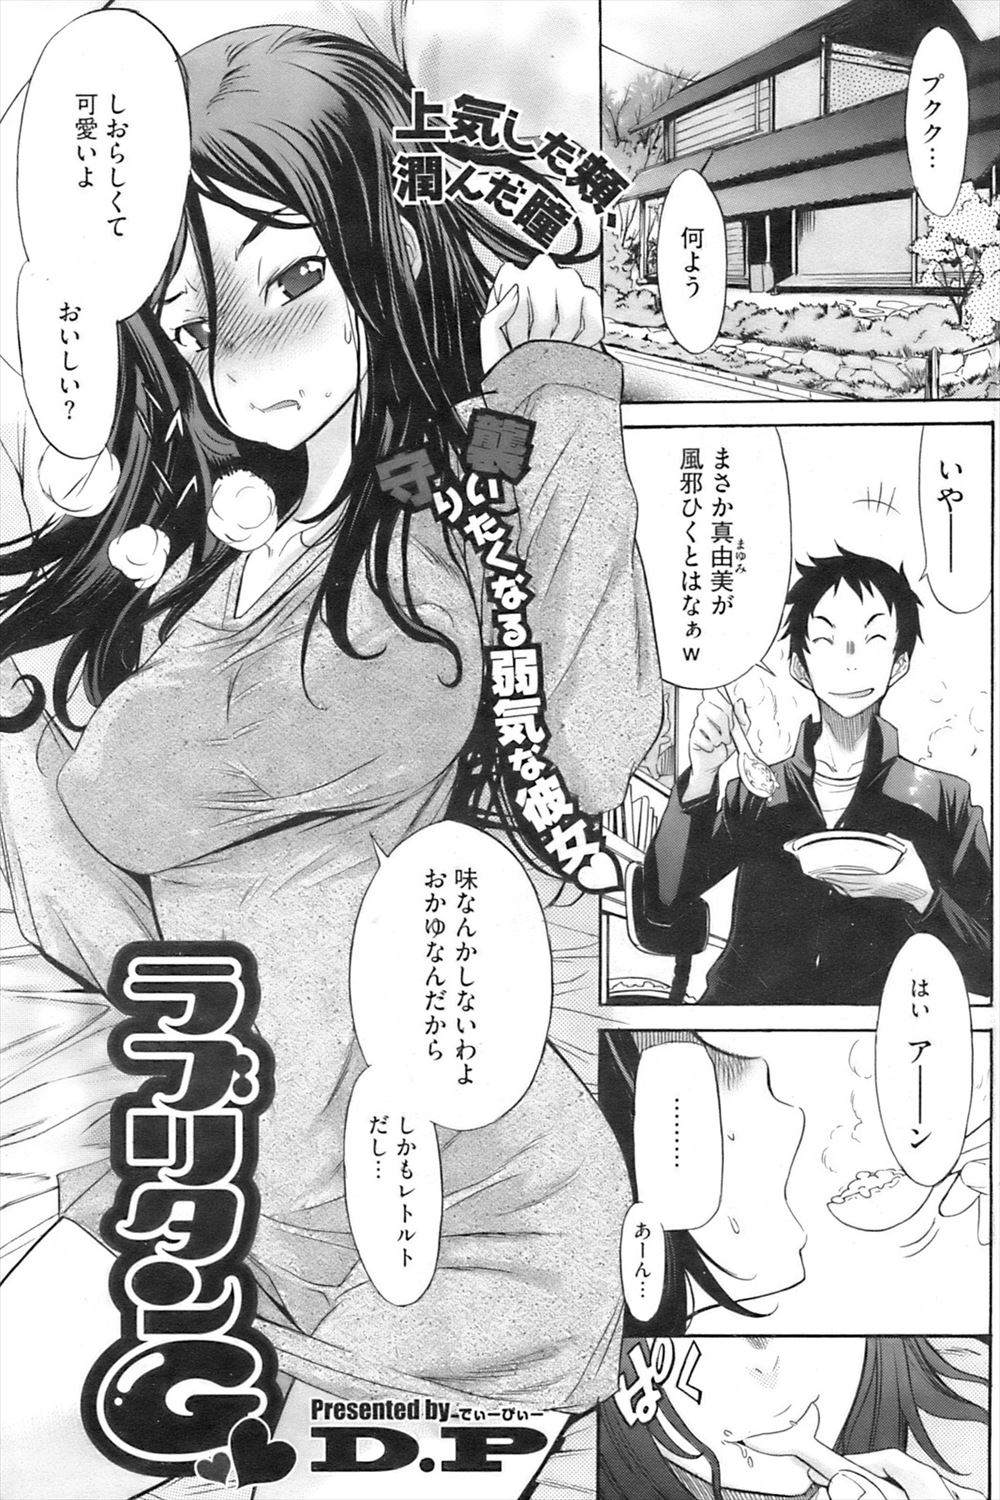 【エロ漫画】風邪を引いて弱ってる彼女の体を拭きながら興奮した彼氏が、座薬を入れてあげながら激しくいちゃラブエッチして風邪をうつされるｗ